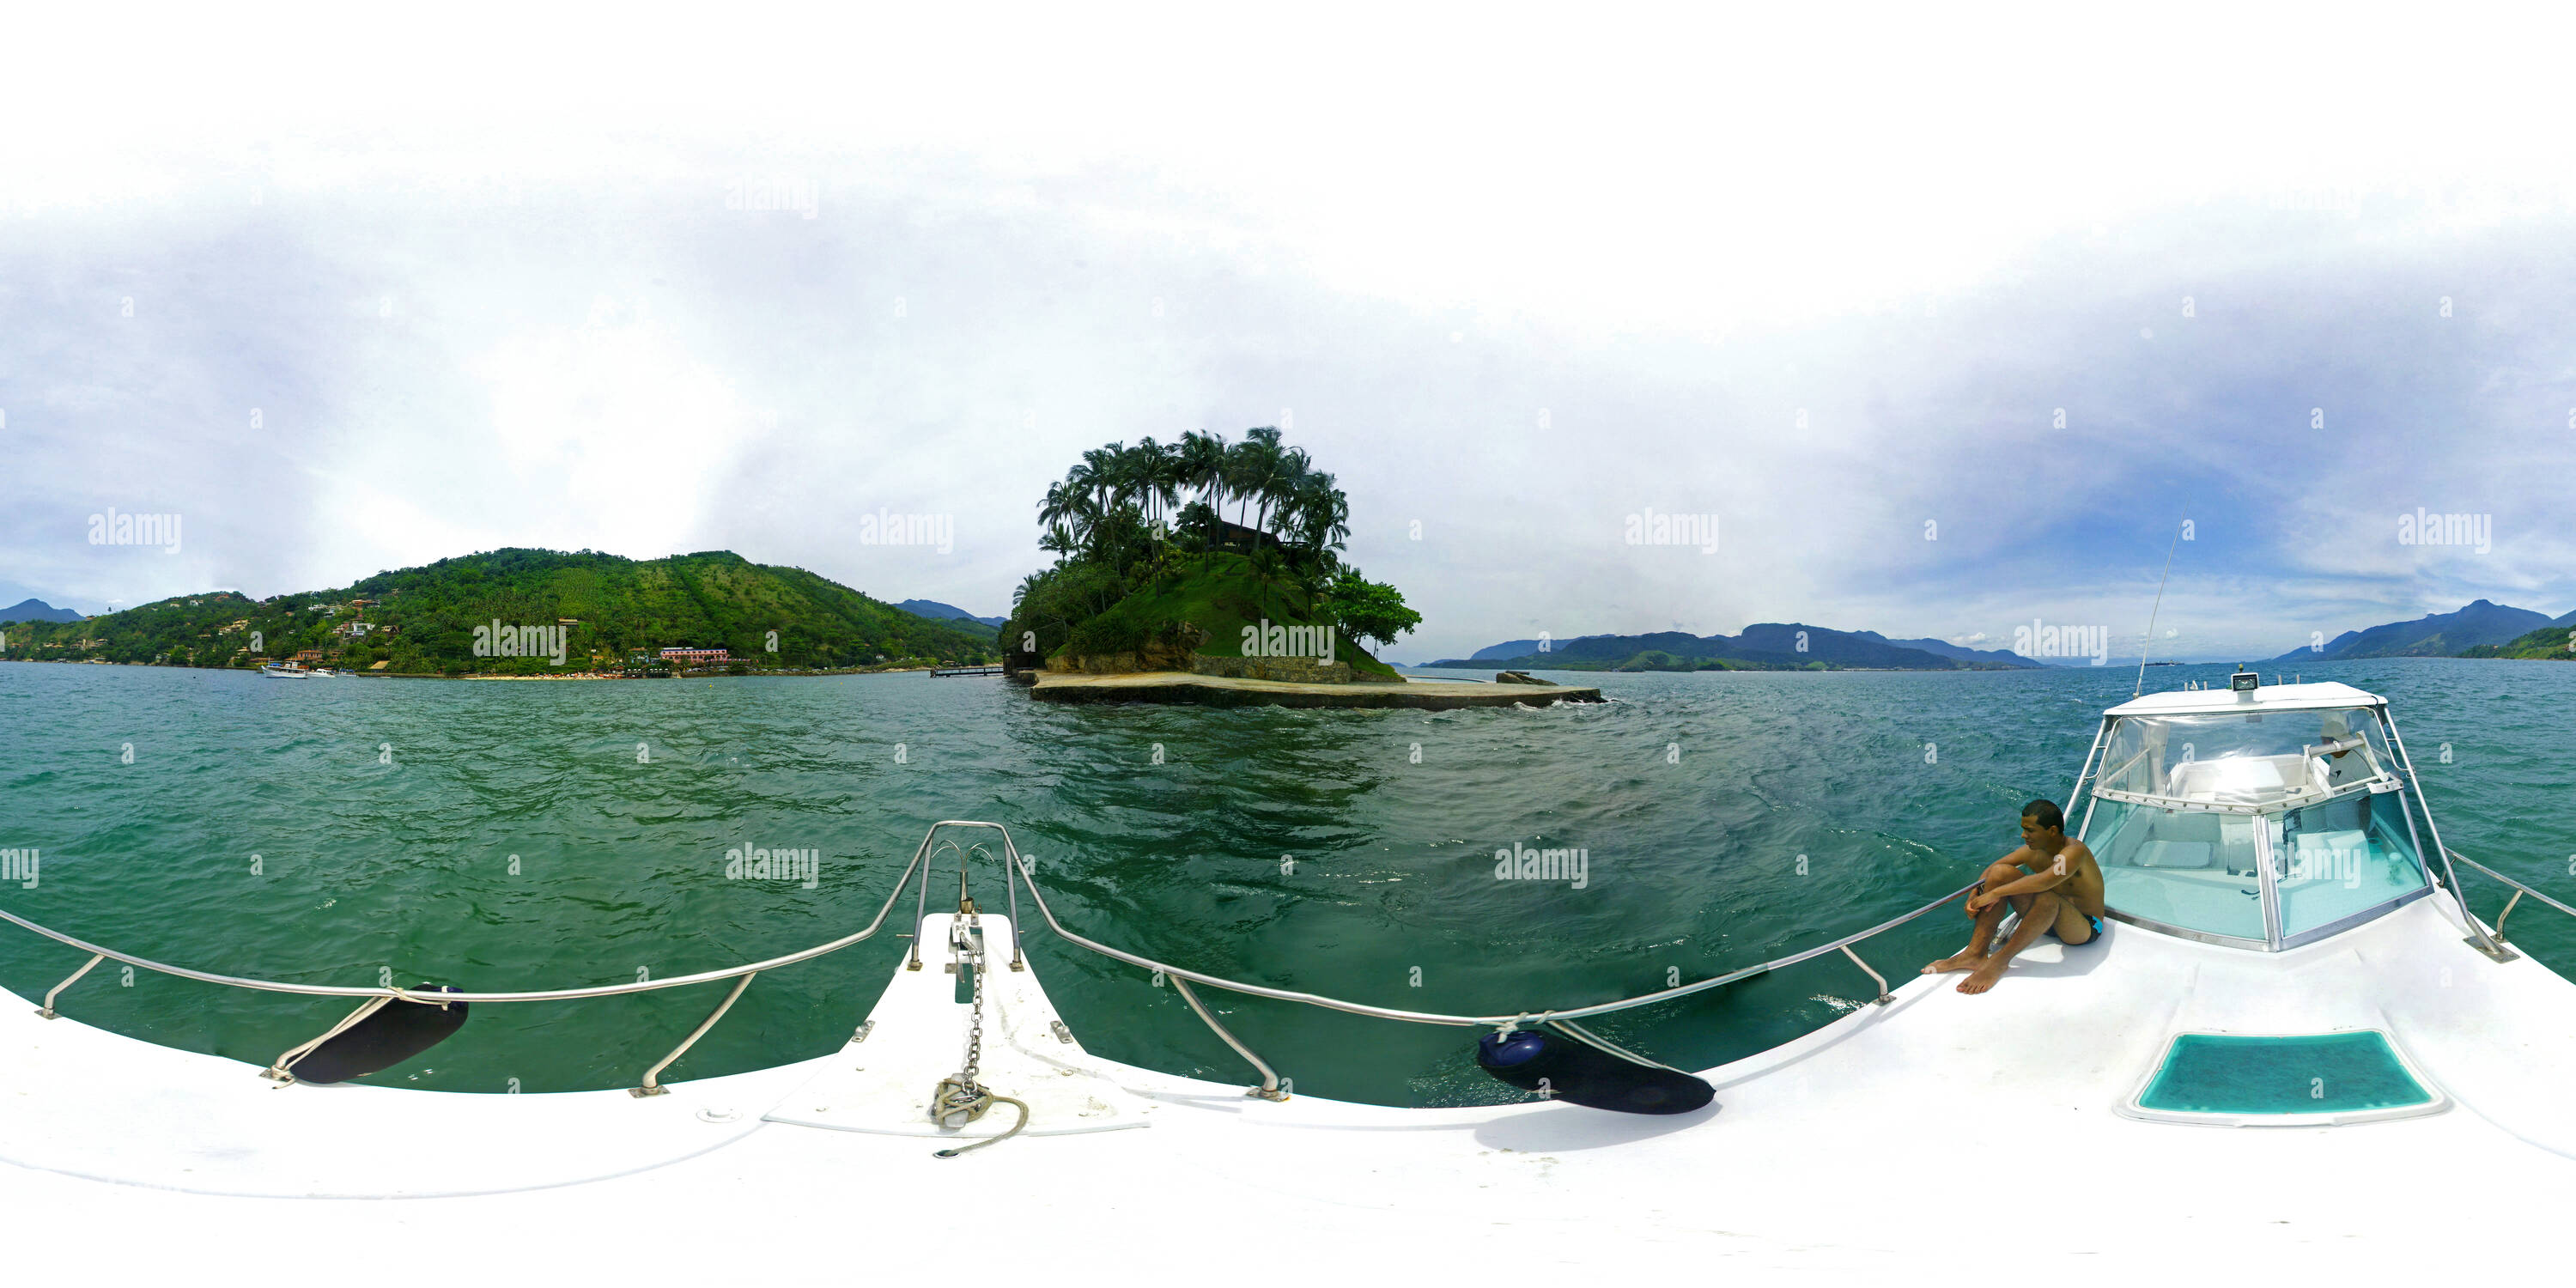 Visualizzazione panoramica a 360 gradi di Vista da Ilha das Cabras em Ilha Bela